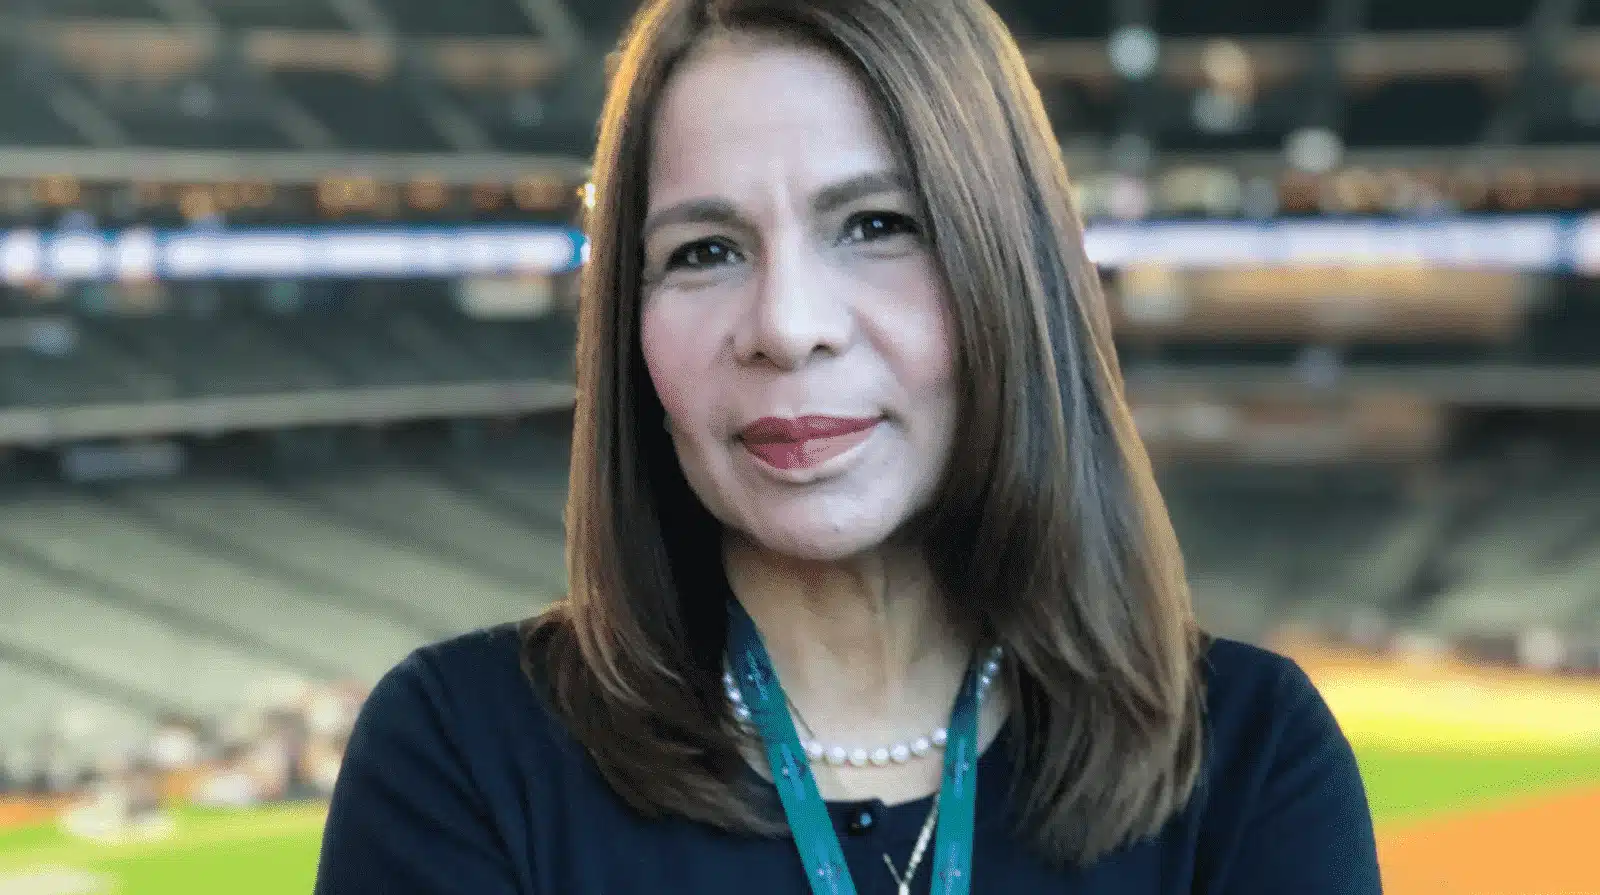 Periodista Mari Montes es víctima de acoso digital